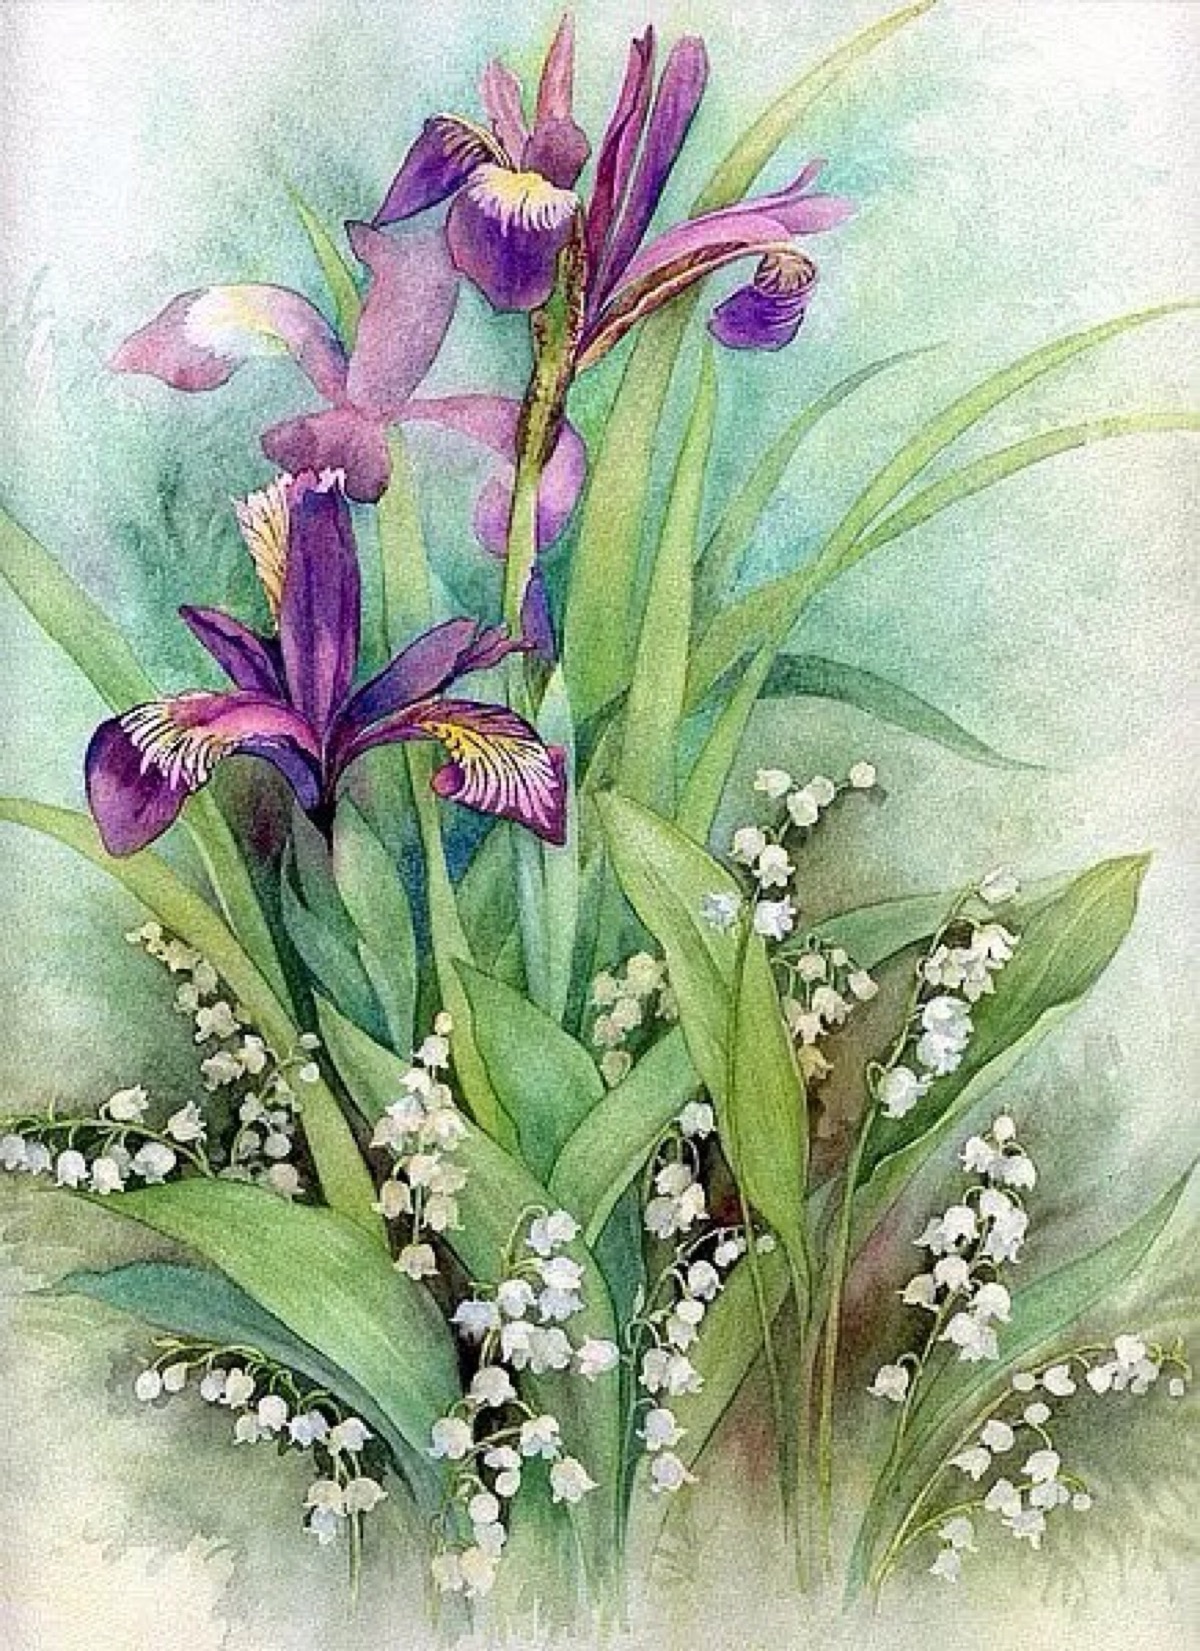 清新水彩画 手绘 花卉 植物 自然风景 清新 堆糖,美图壁纸兴趣